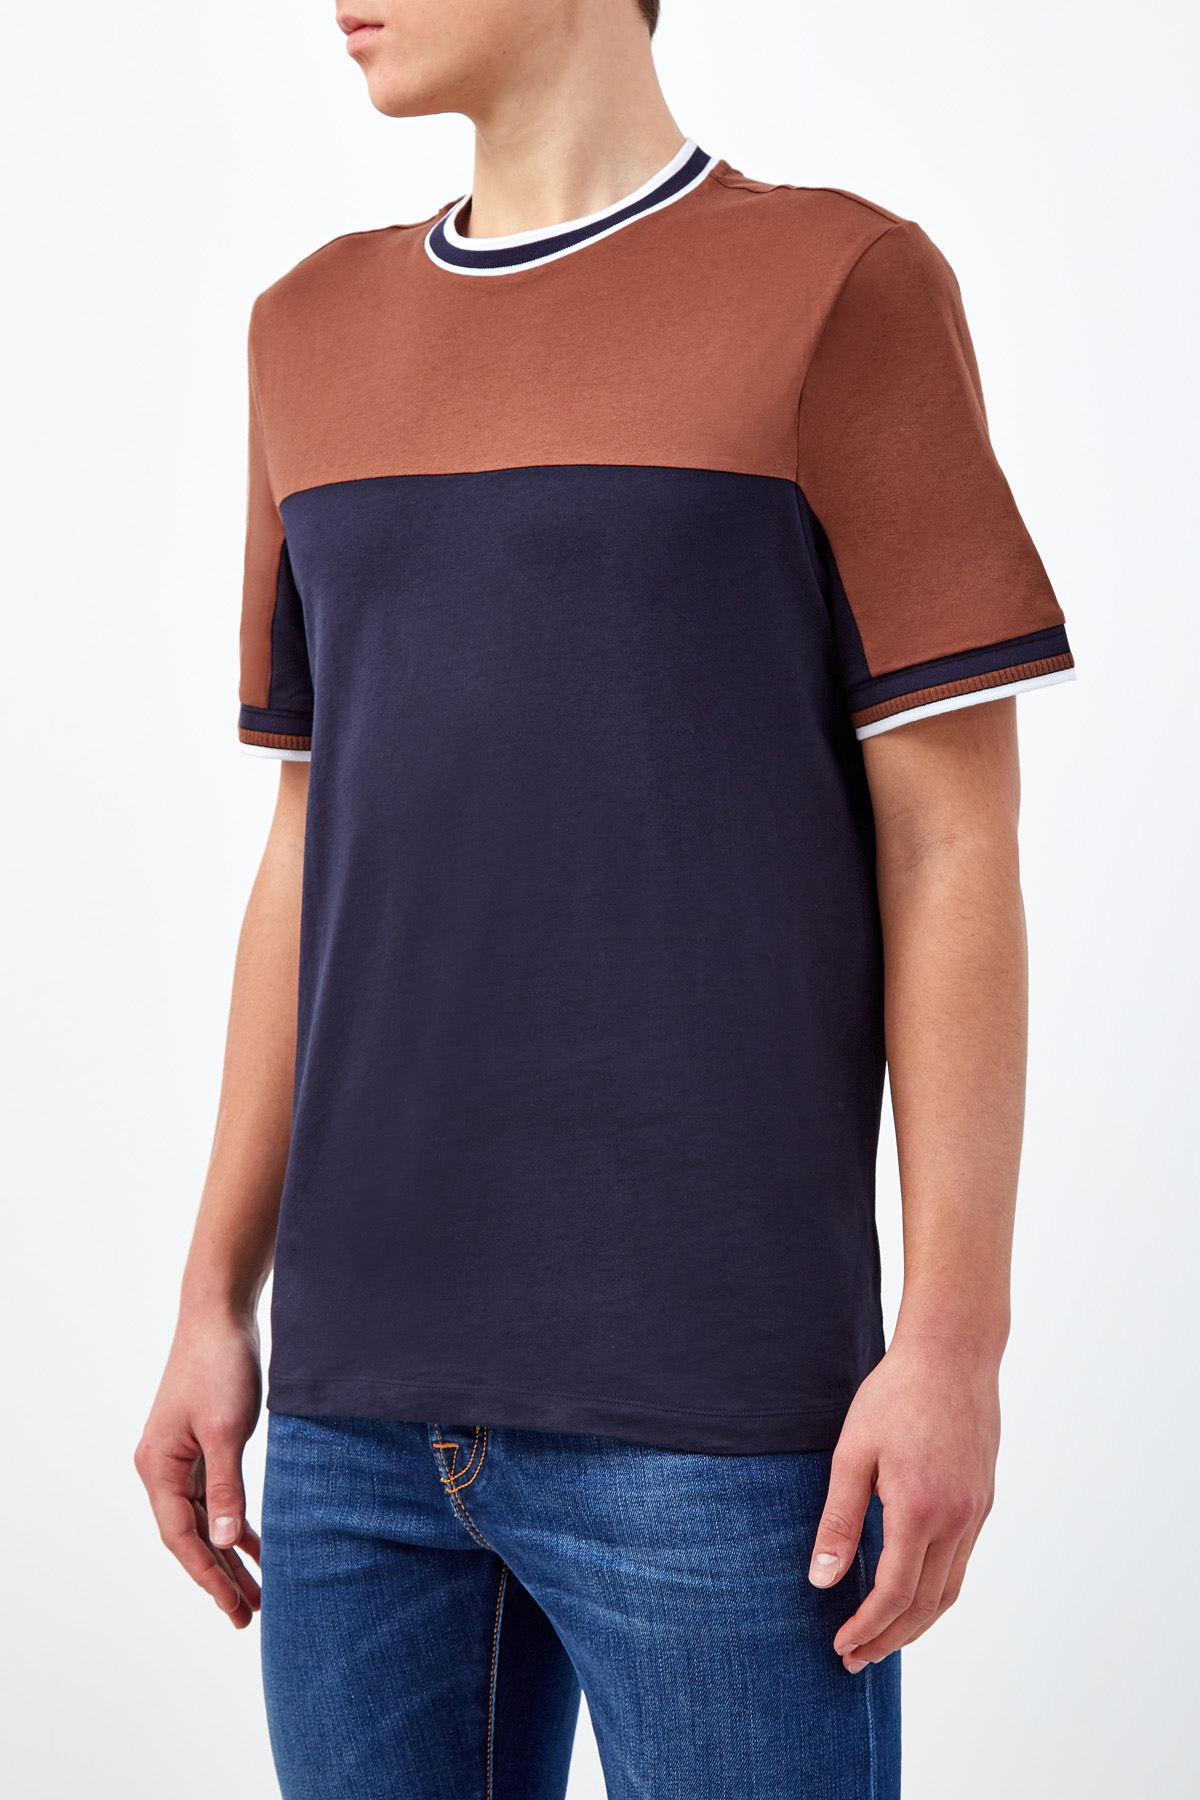 Базовая футболка из хлопка джерси MICHAEL KORS, цвет мульти, размер L;2XL - фото 3